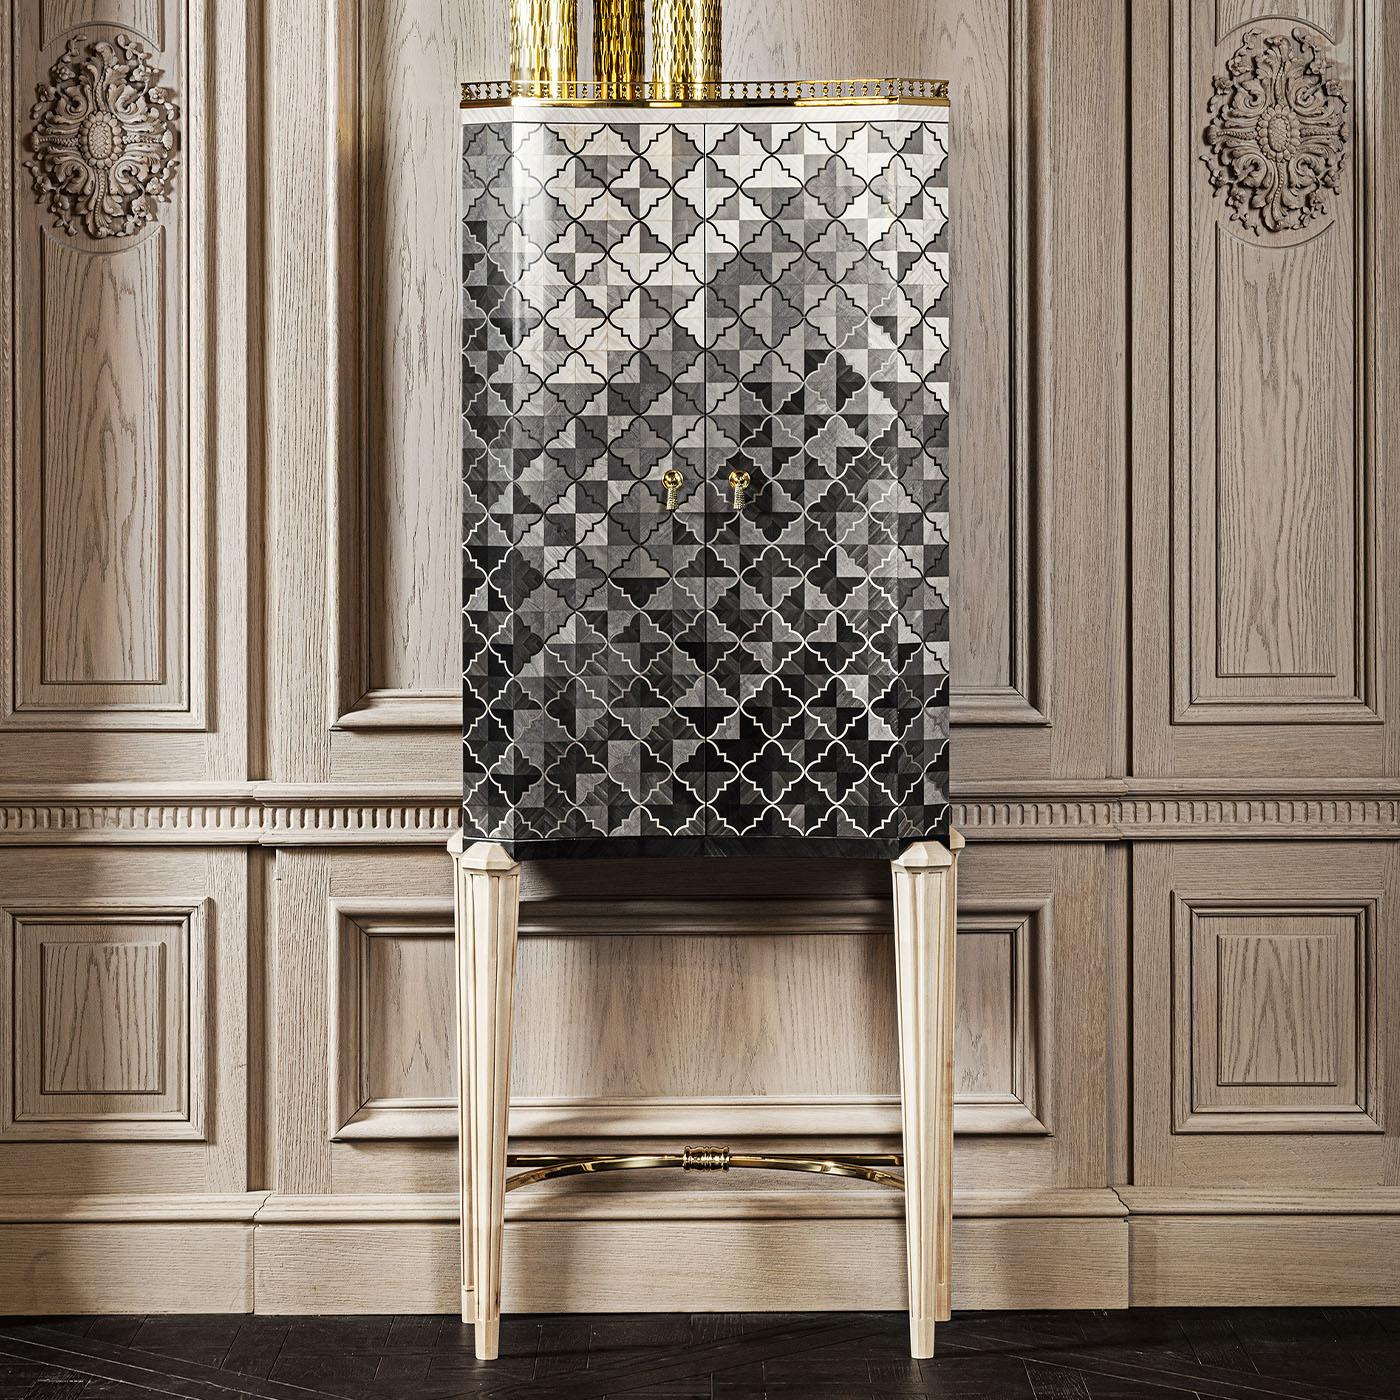 Fabriquée à la main à partir de bois de haute qualité, l'armoire présente un motif précieux dans les tons gris.